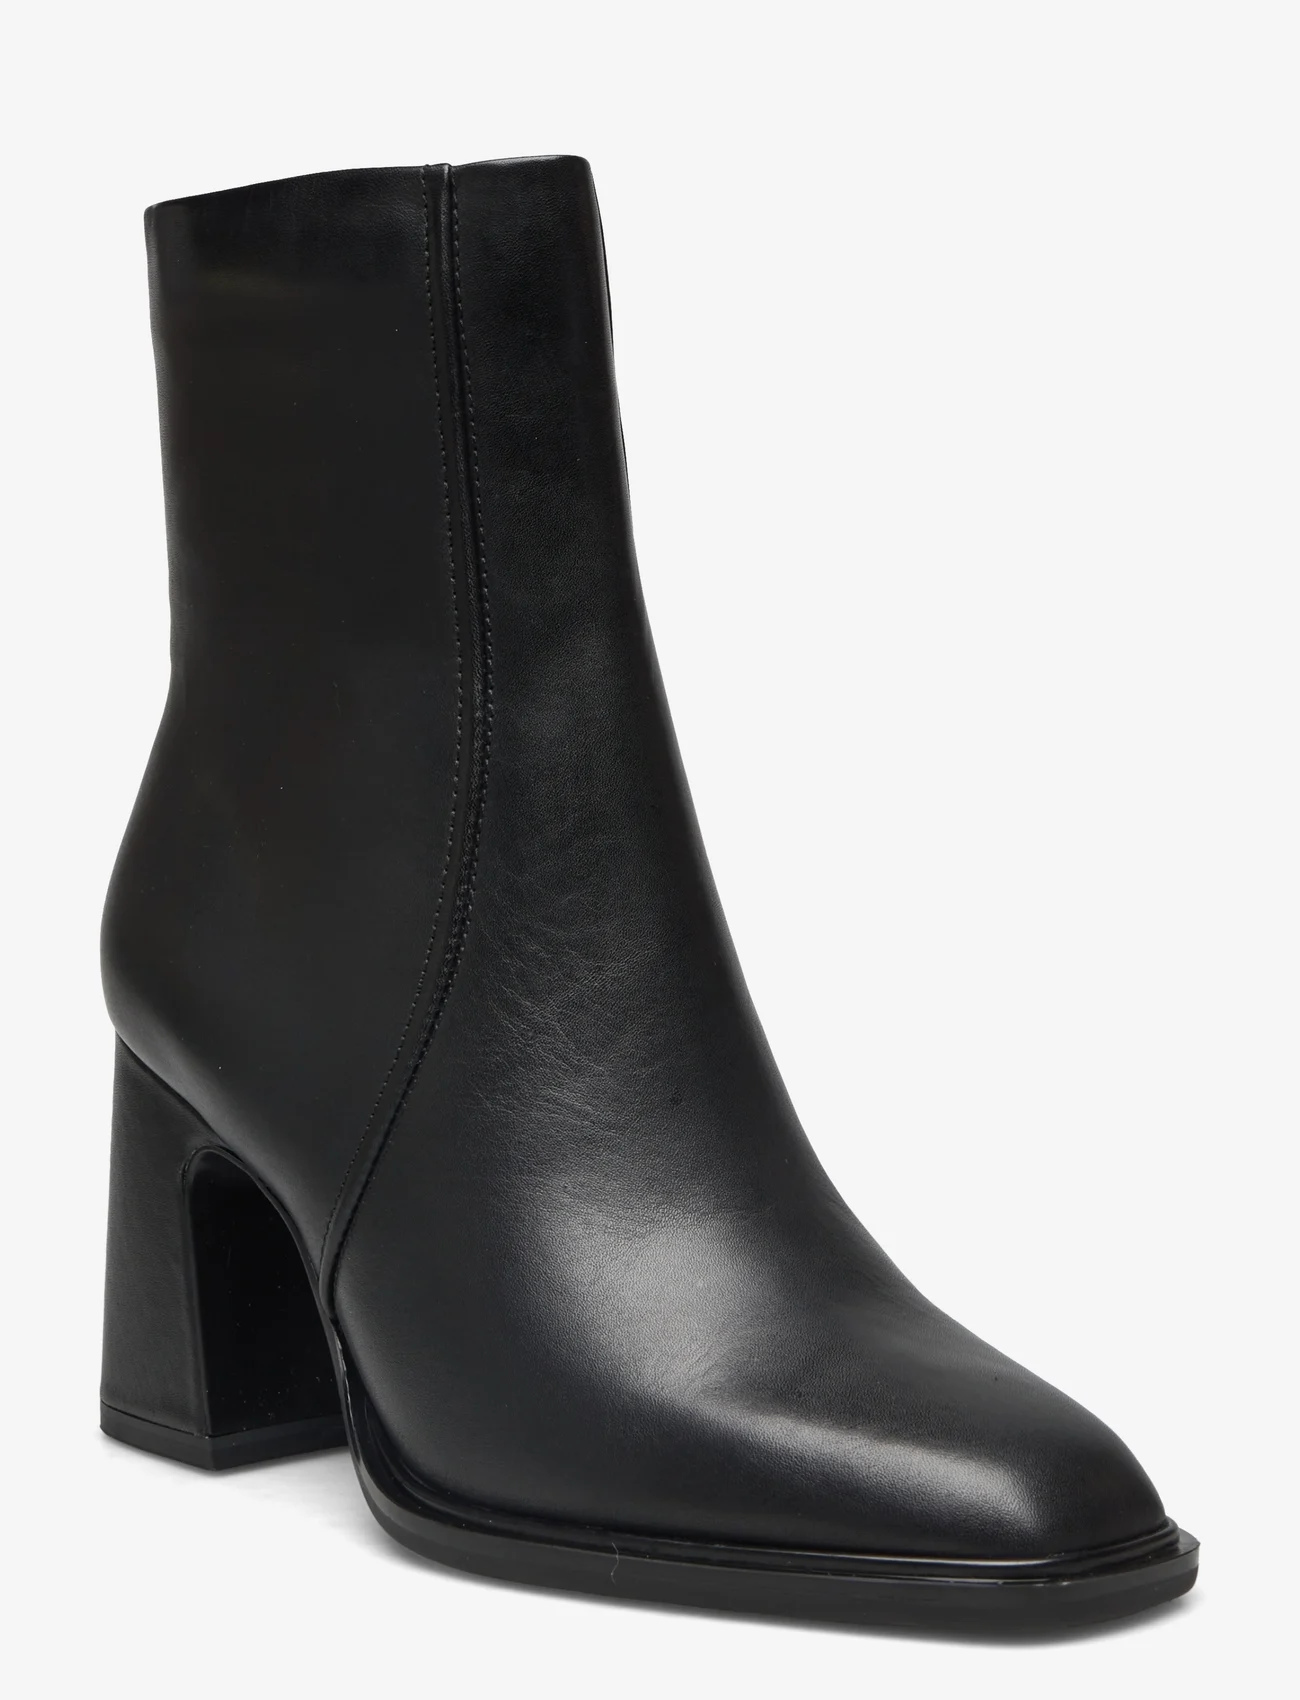 NEWD.Tamaris - Women Boots - hohe absätze - black - 0